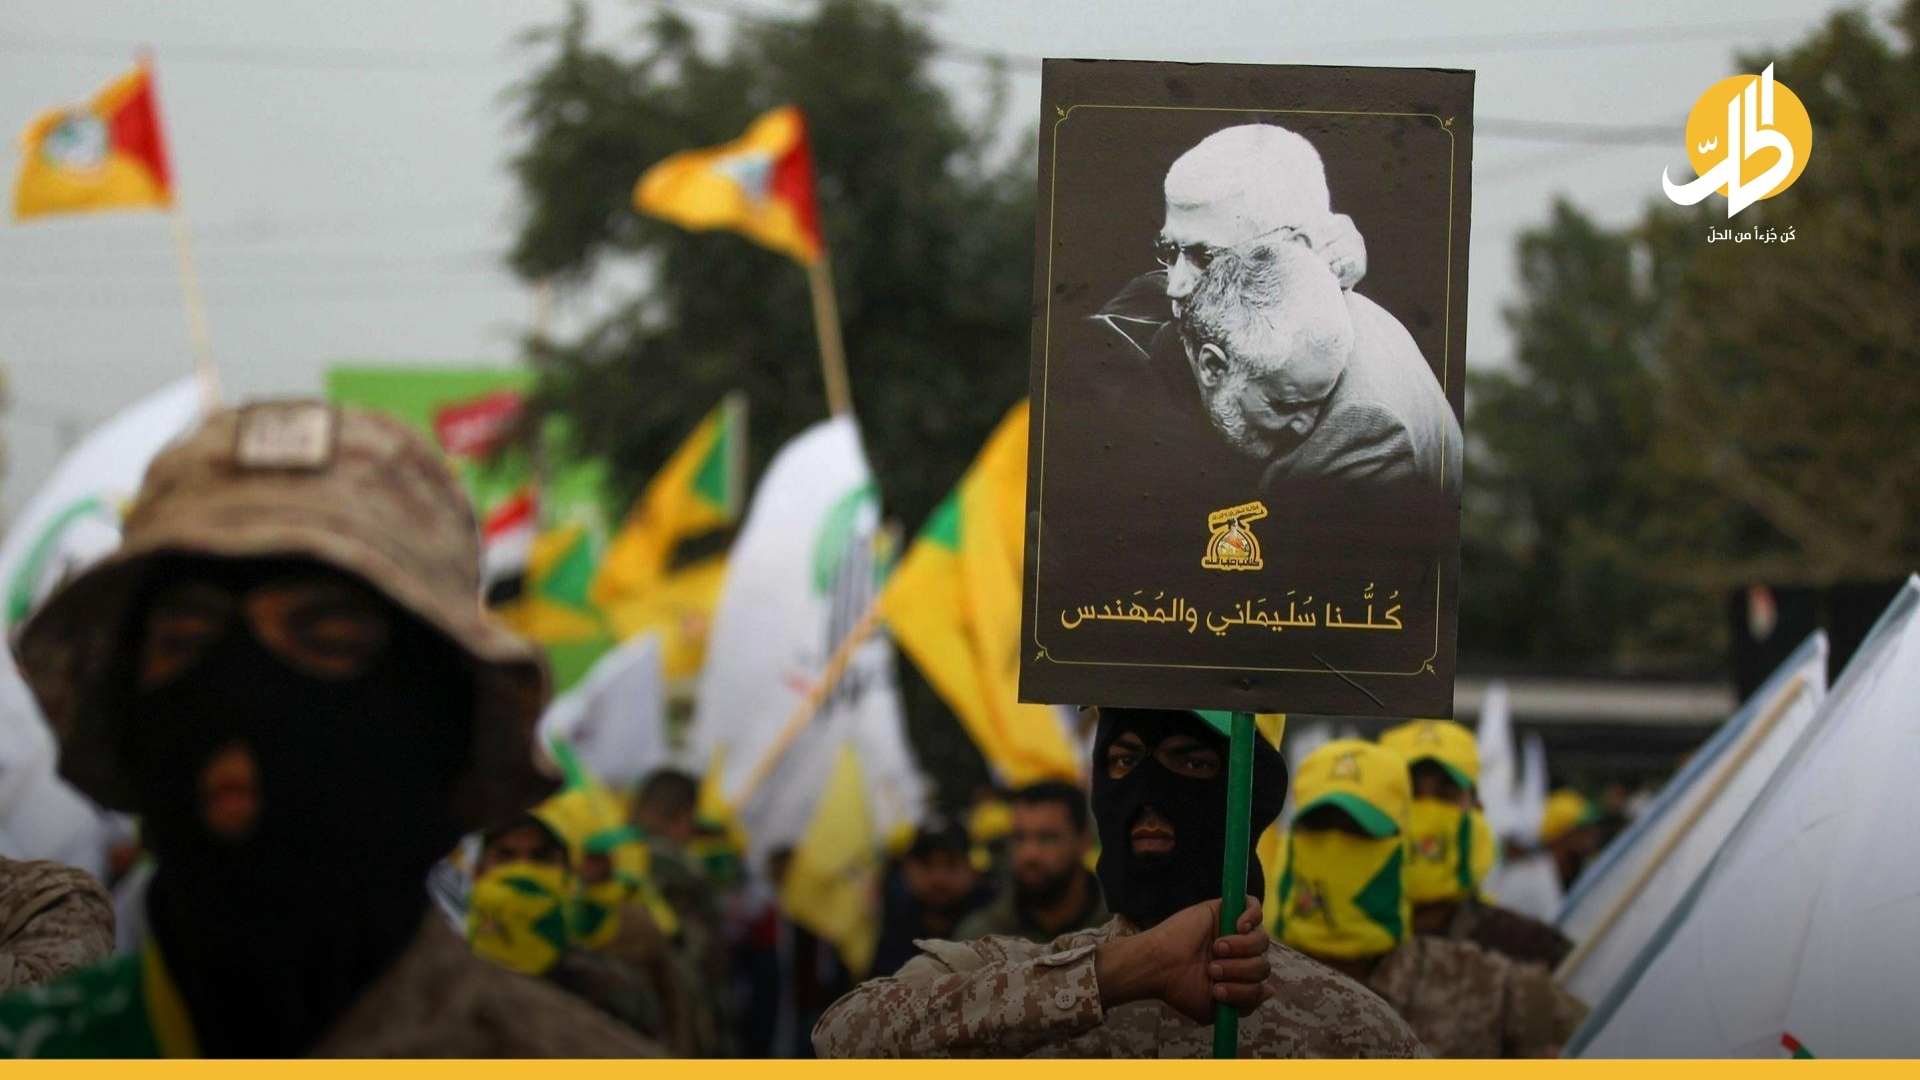 الميليشيات العراقية تفشل بنصب تمثال لسليماني والمهندس في بغداد: من منعها؟